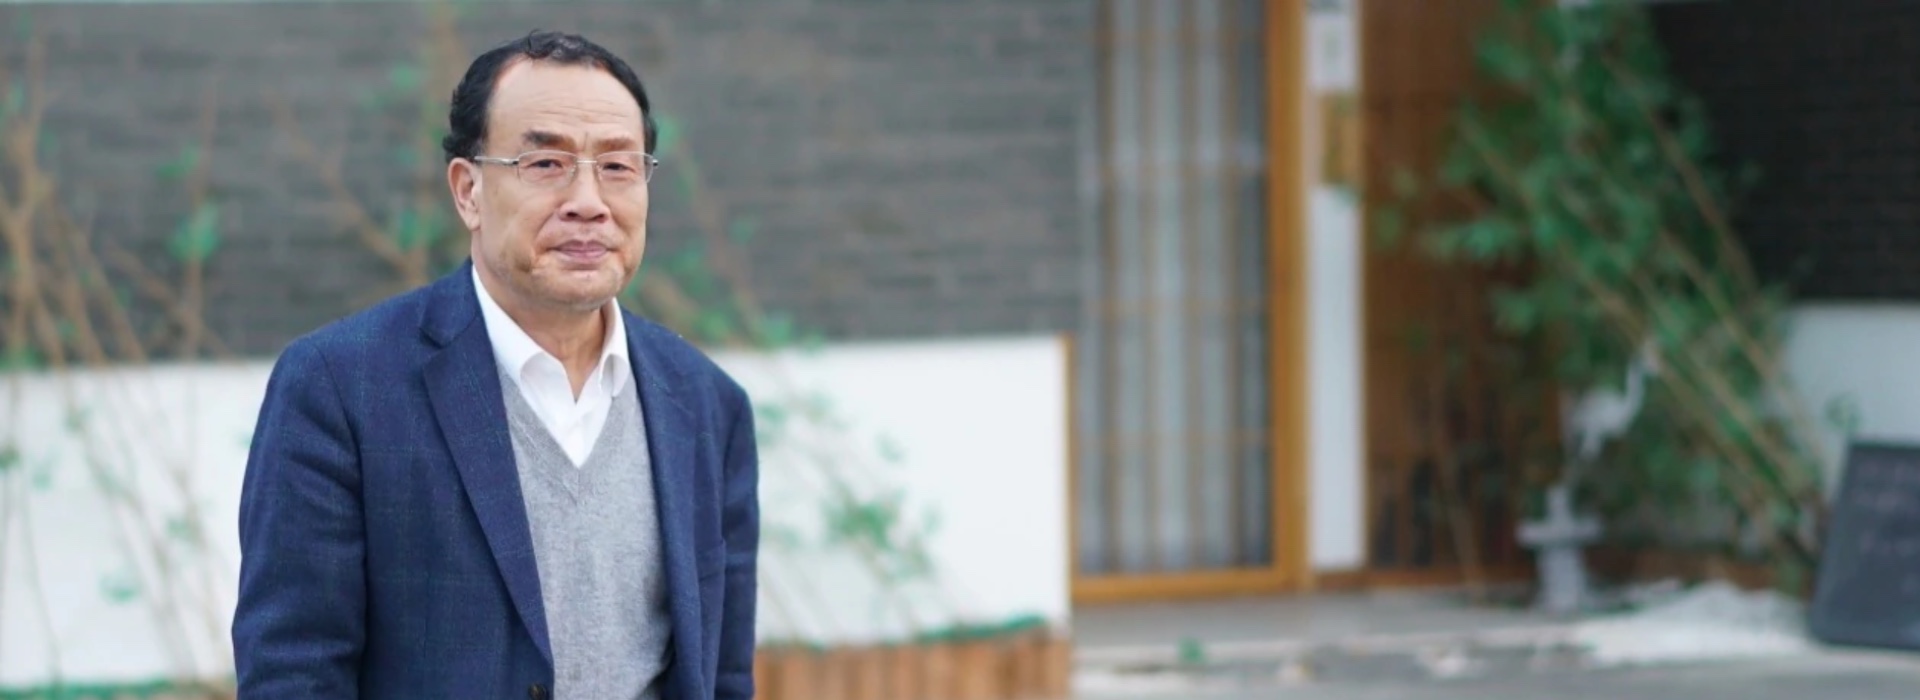 Zhang Yongzhen, allo scienziato che tracciò la sequenza Covid-19 negato l'ingresso in laboratorio